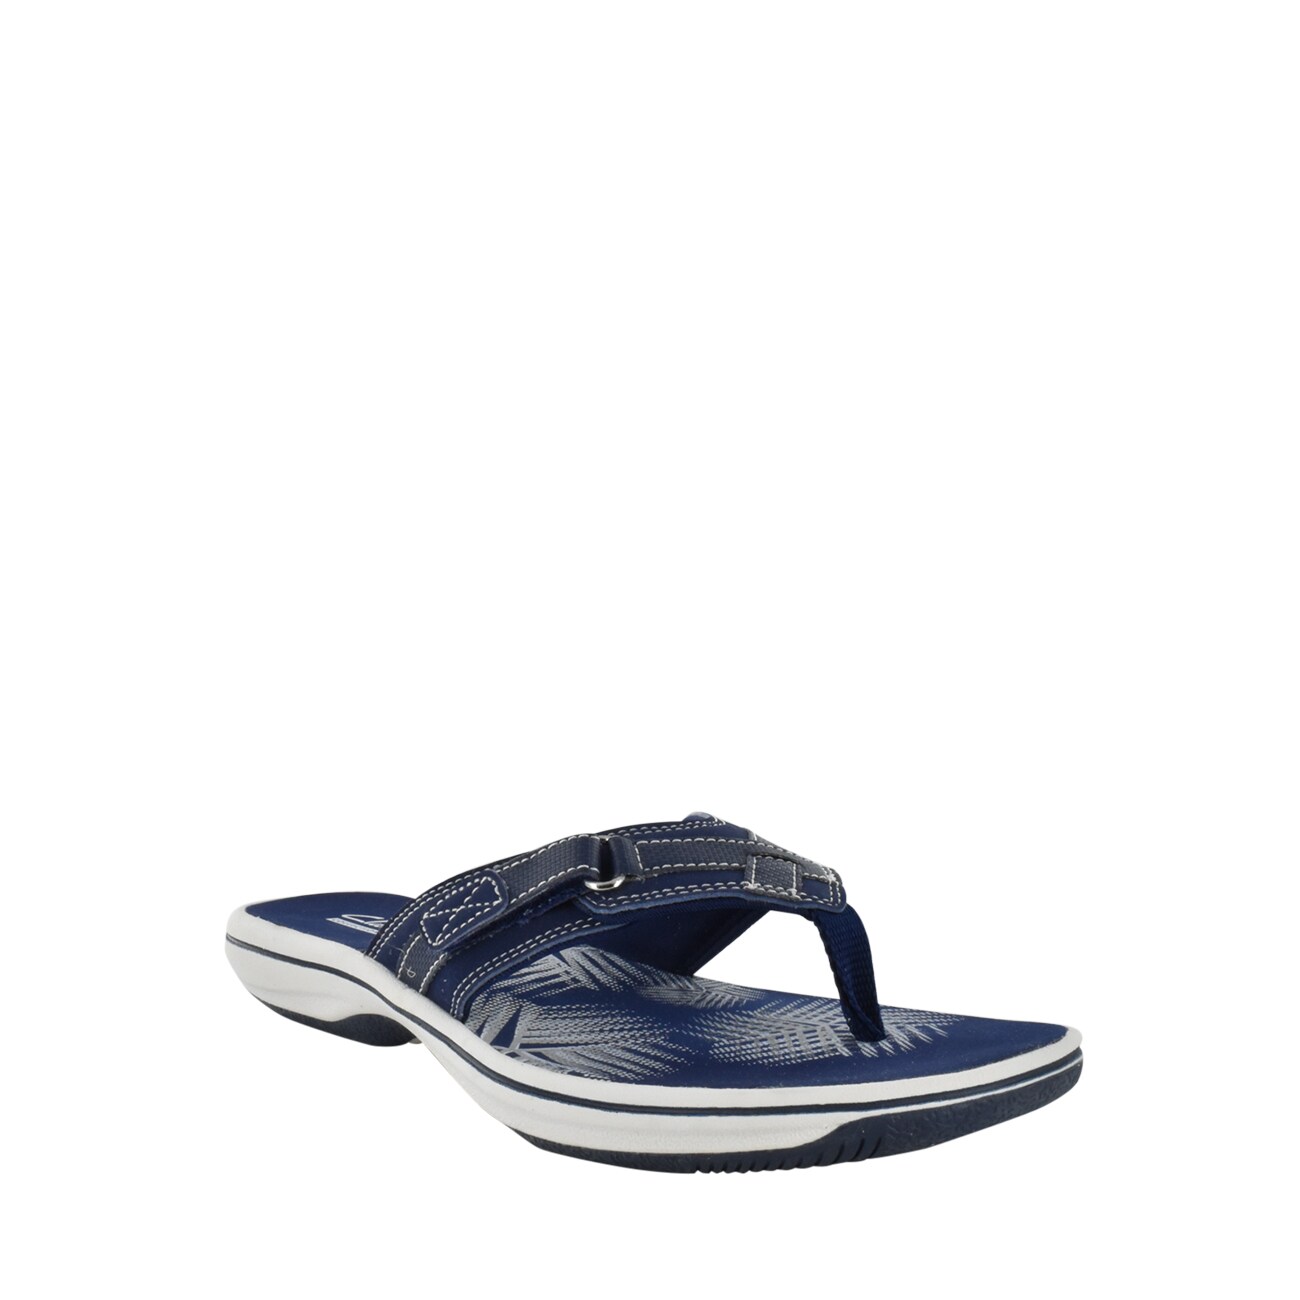 Clarks Breeze Sea Sandal | The Shoe Company